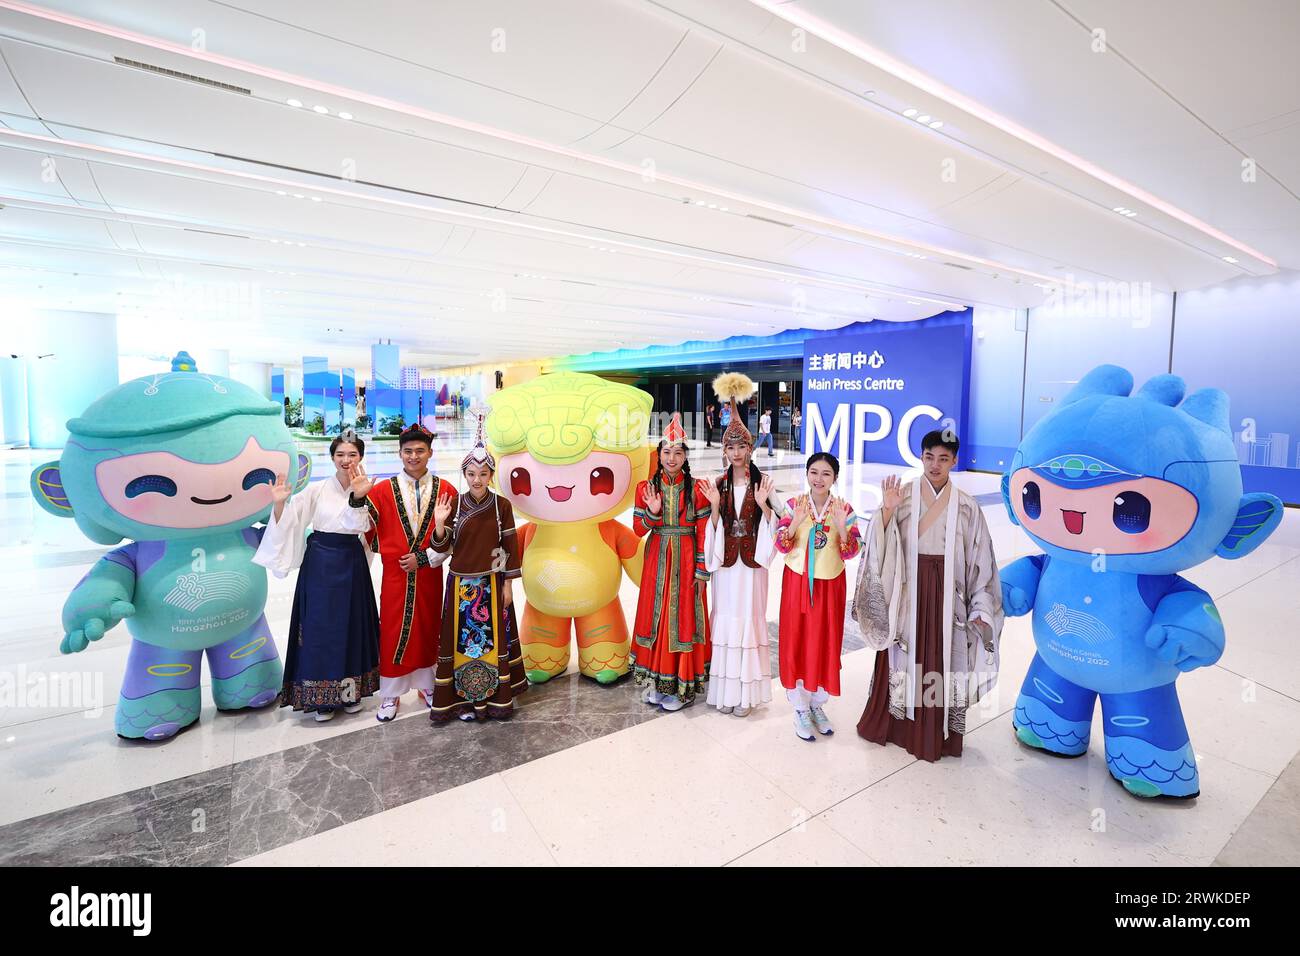 I volontari dell'Università di Zhejiang vestiti con costumi etnici accolgono giornalisti di vari paesi con la mascotte dei Giochi asiatici al Main Foto Stock